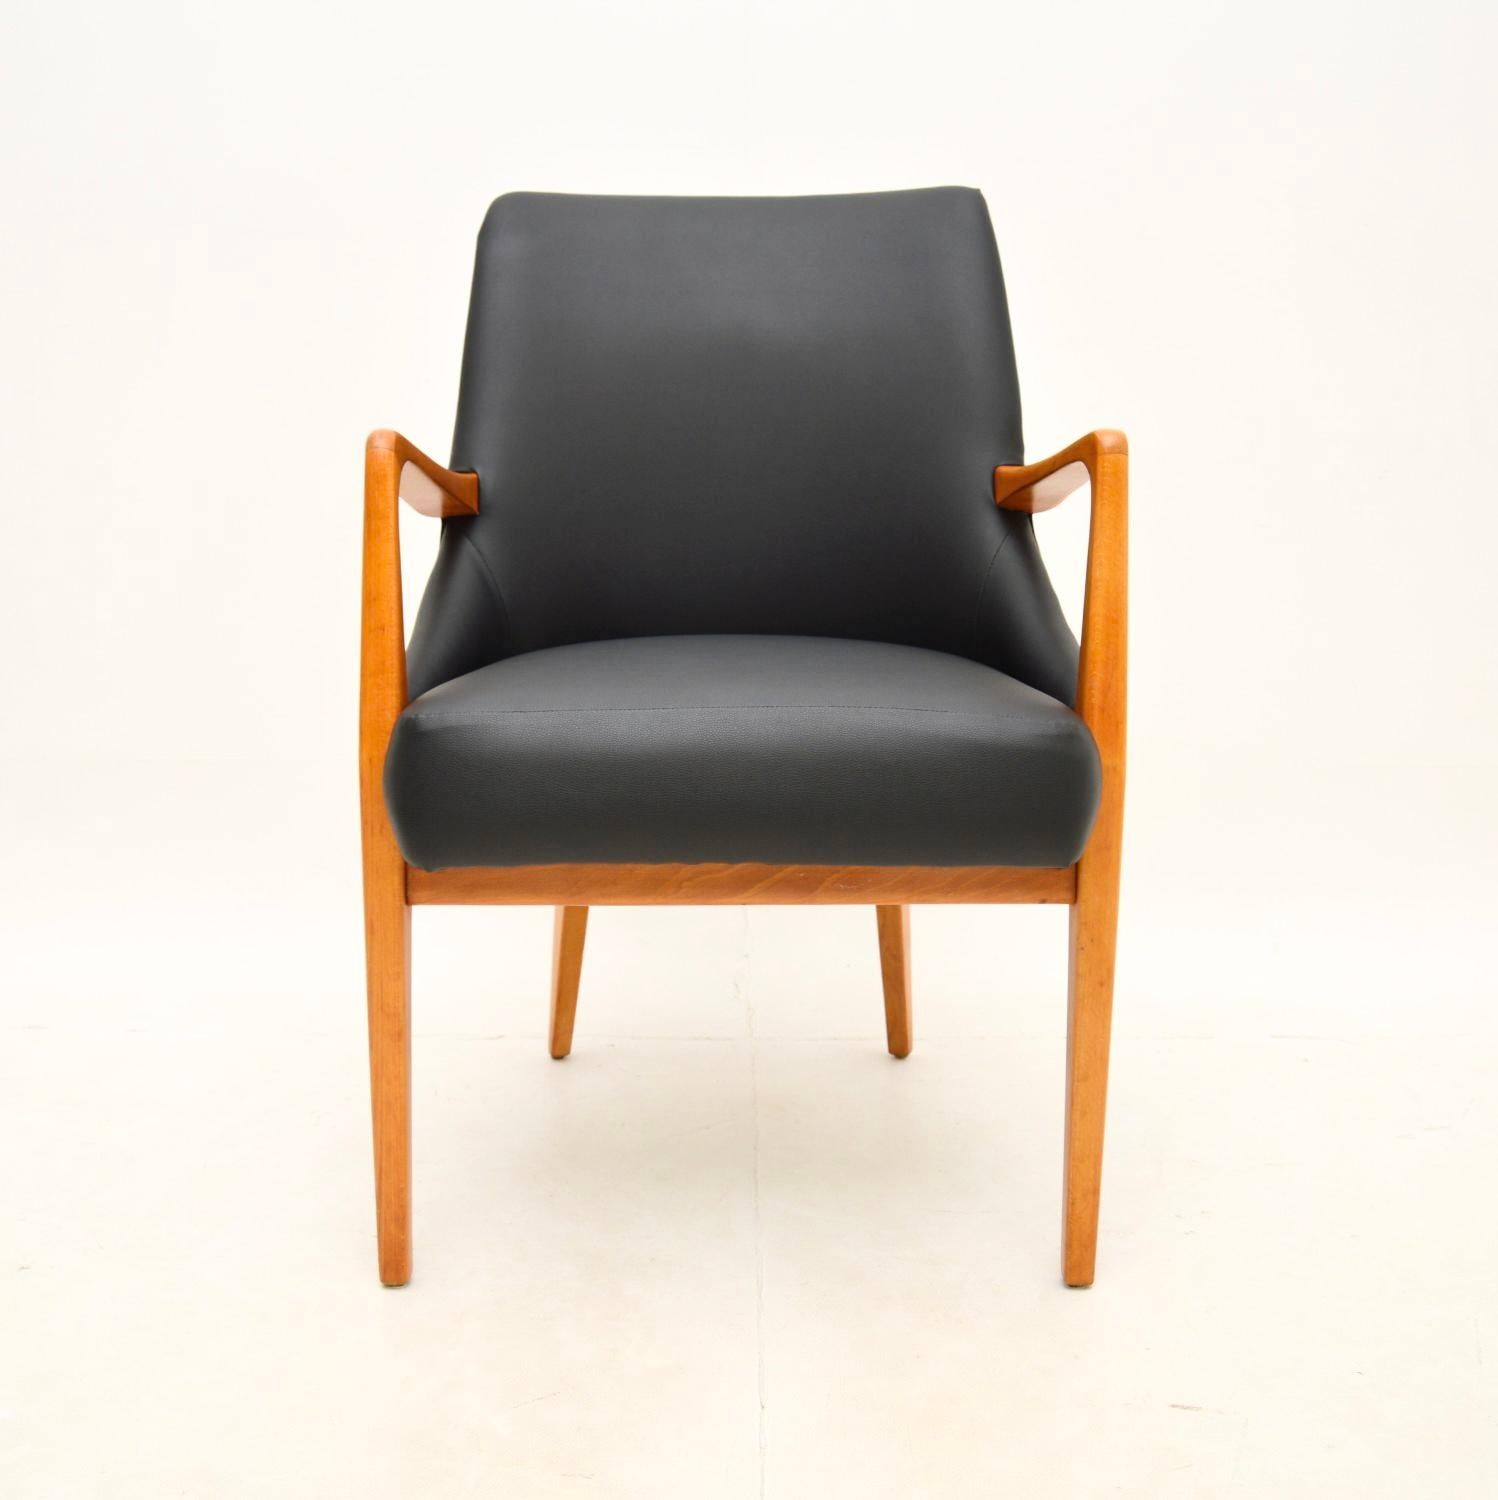 Ein sehr stilvoller und äußerst bequemer dänischer Schreibtischstuhl / Sessel im Vintage-Stil. Sie wurde in Dänemark hergestellt und stammt aus den 1960er Jahren.

Er ist von hervorragender Qualität, robust gebaut und hat ein schönes Design. Er hat